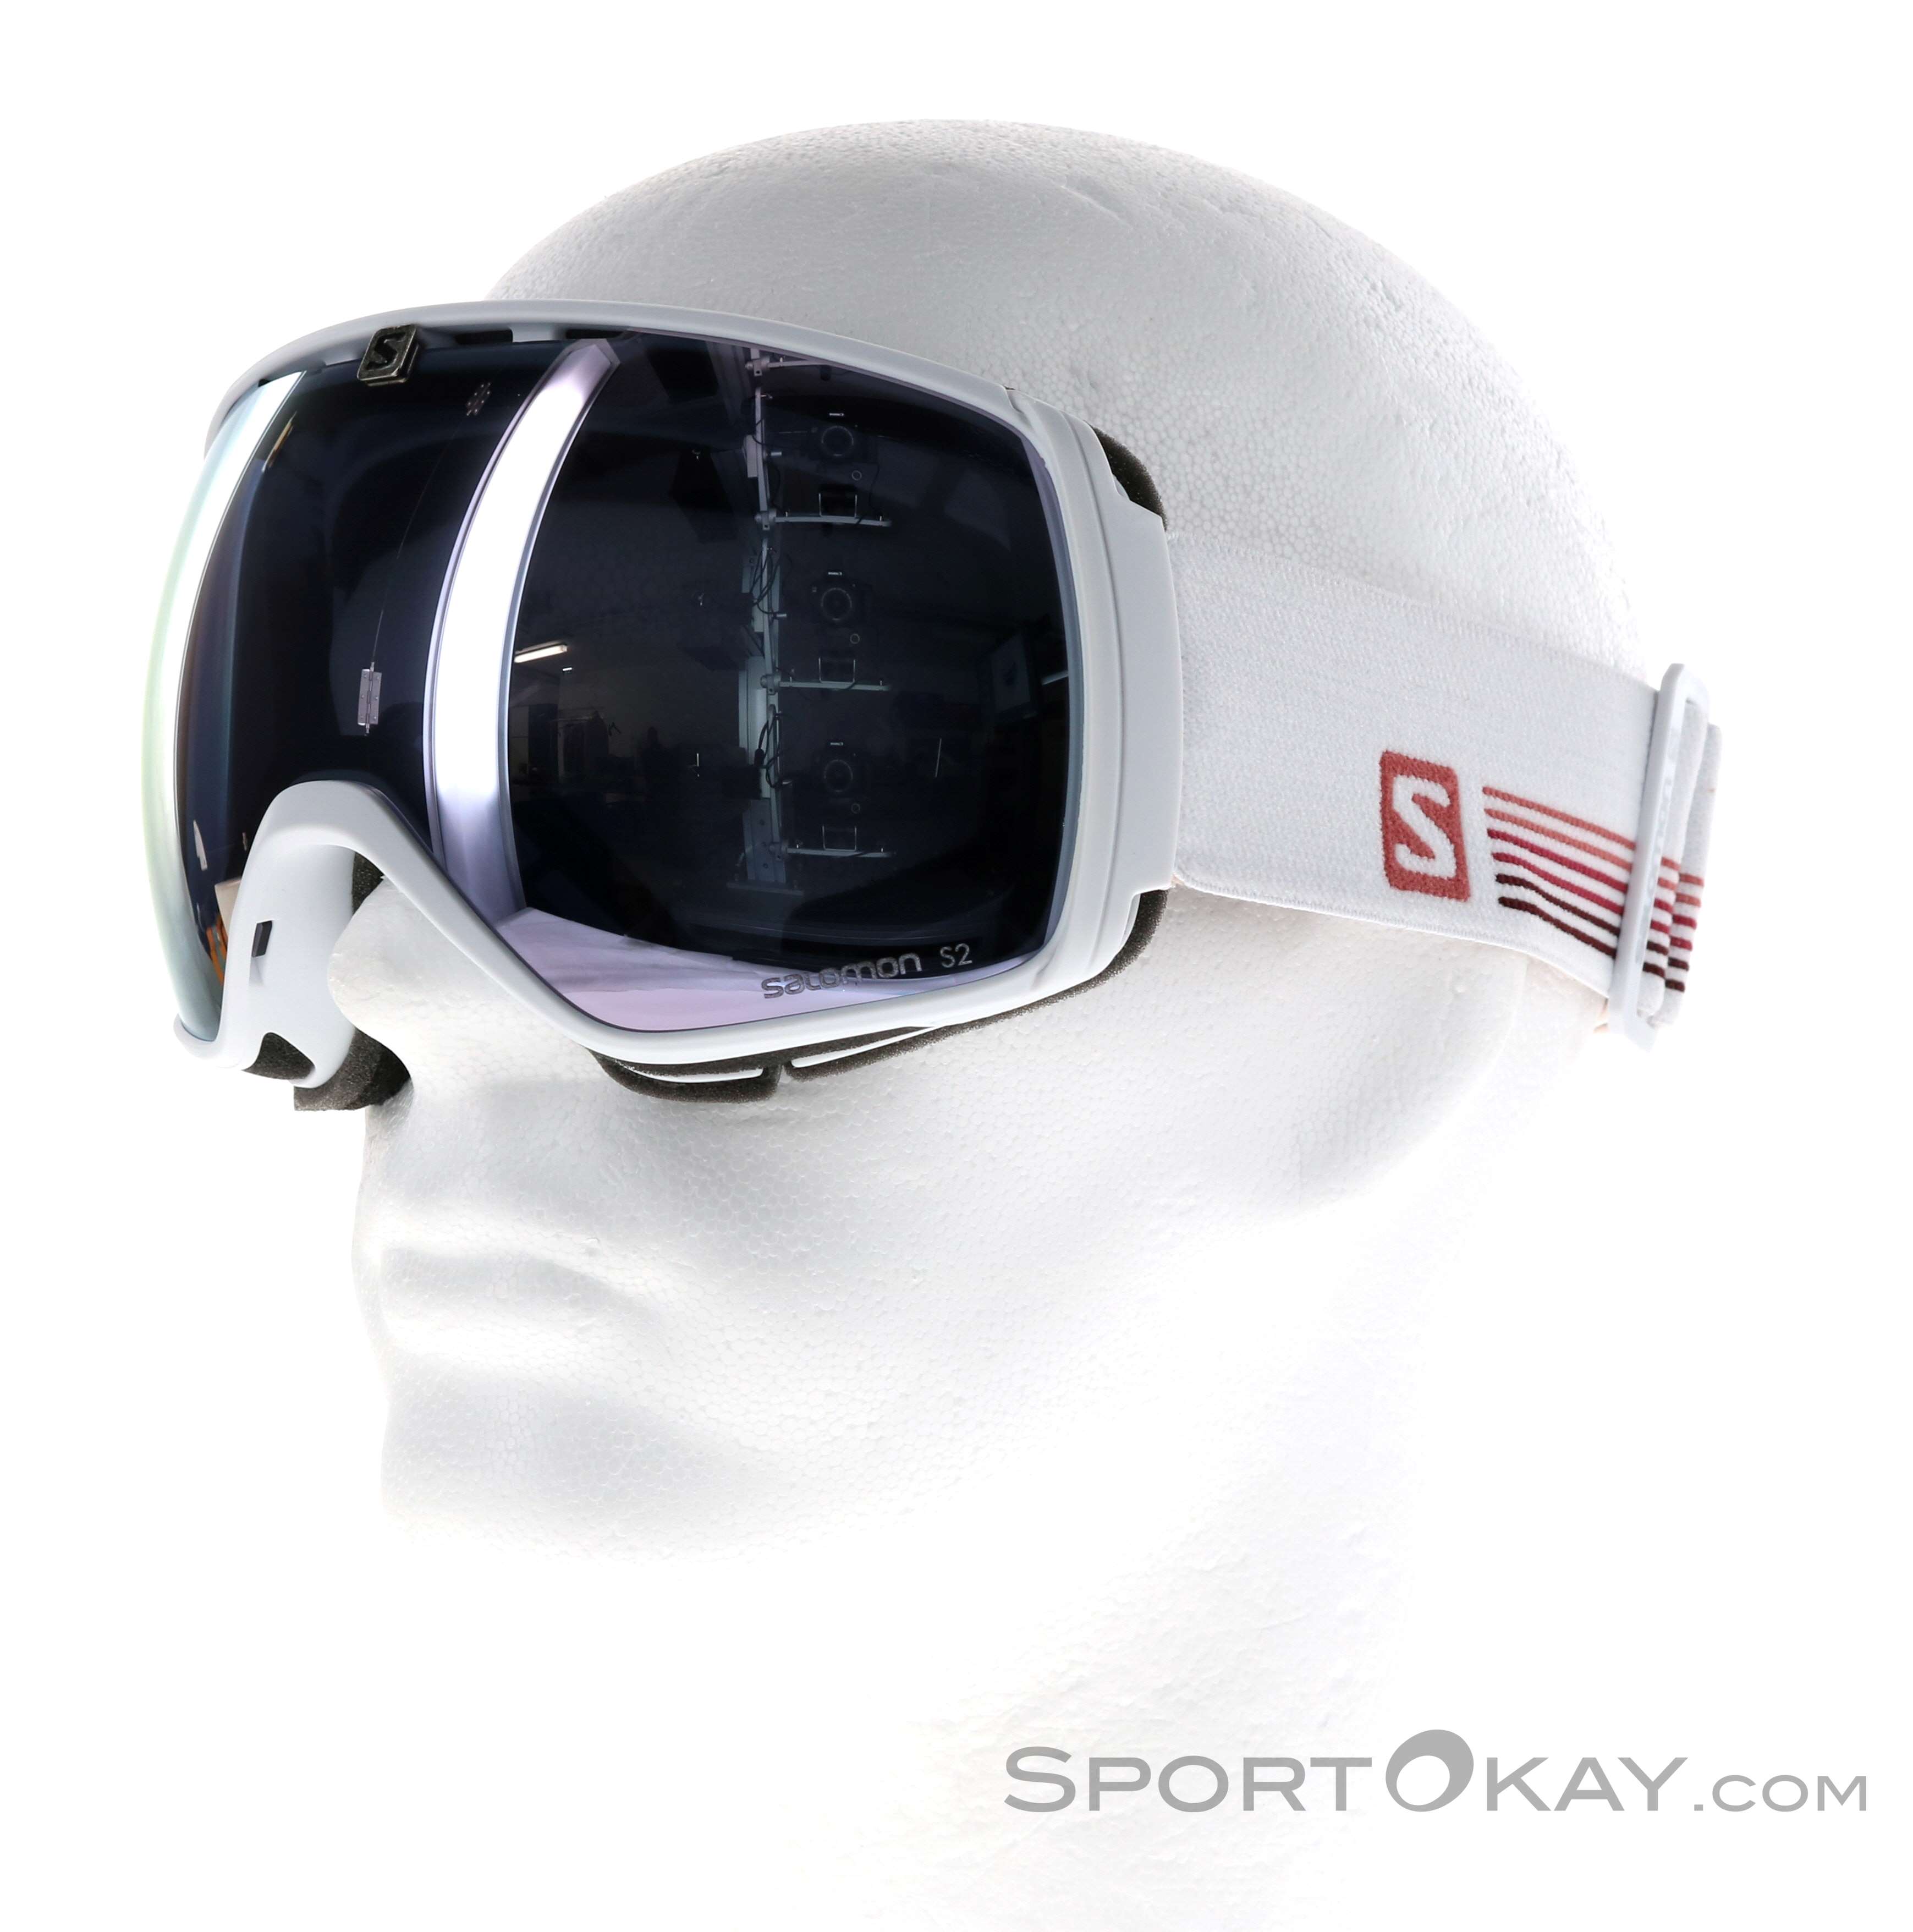 job Jeg spiser morgenmad Michelangelo Salomon XT One Ski Goggles - Ski Googles - Glasses - Ski Touring - All